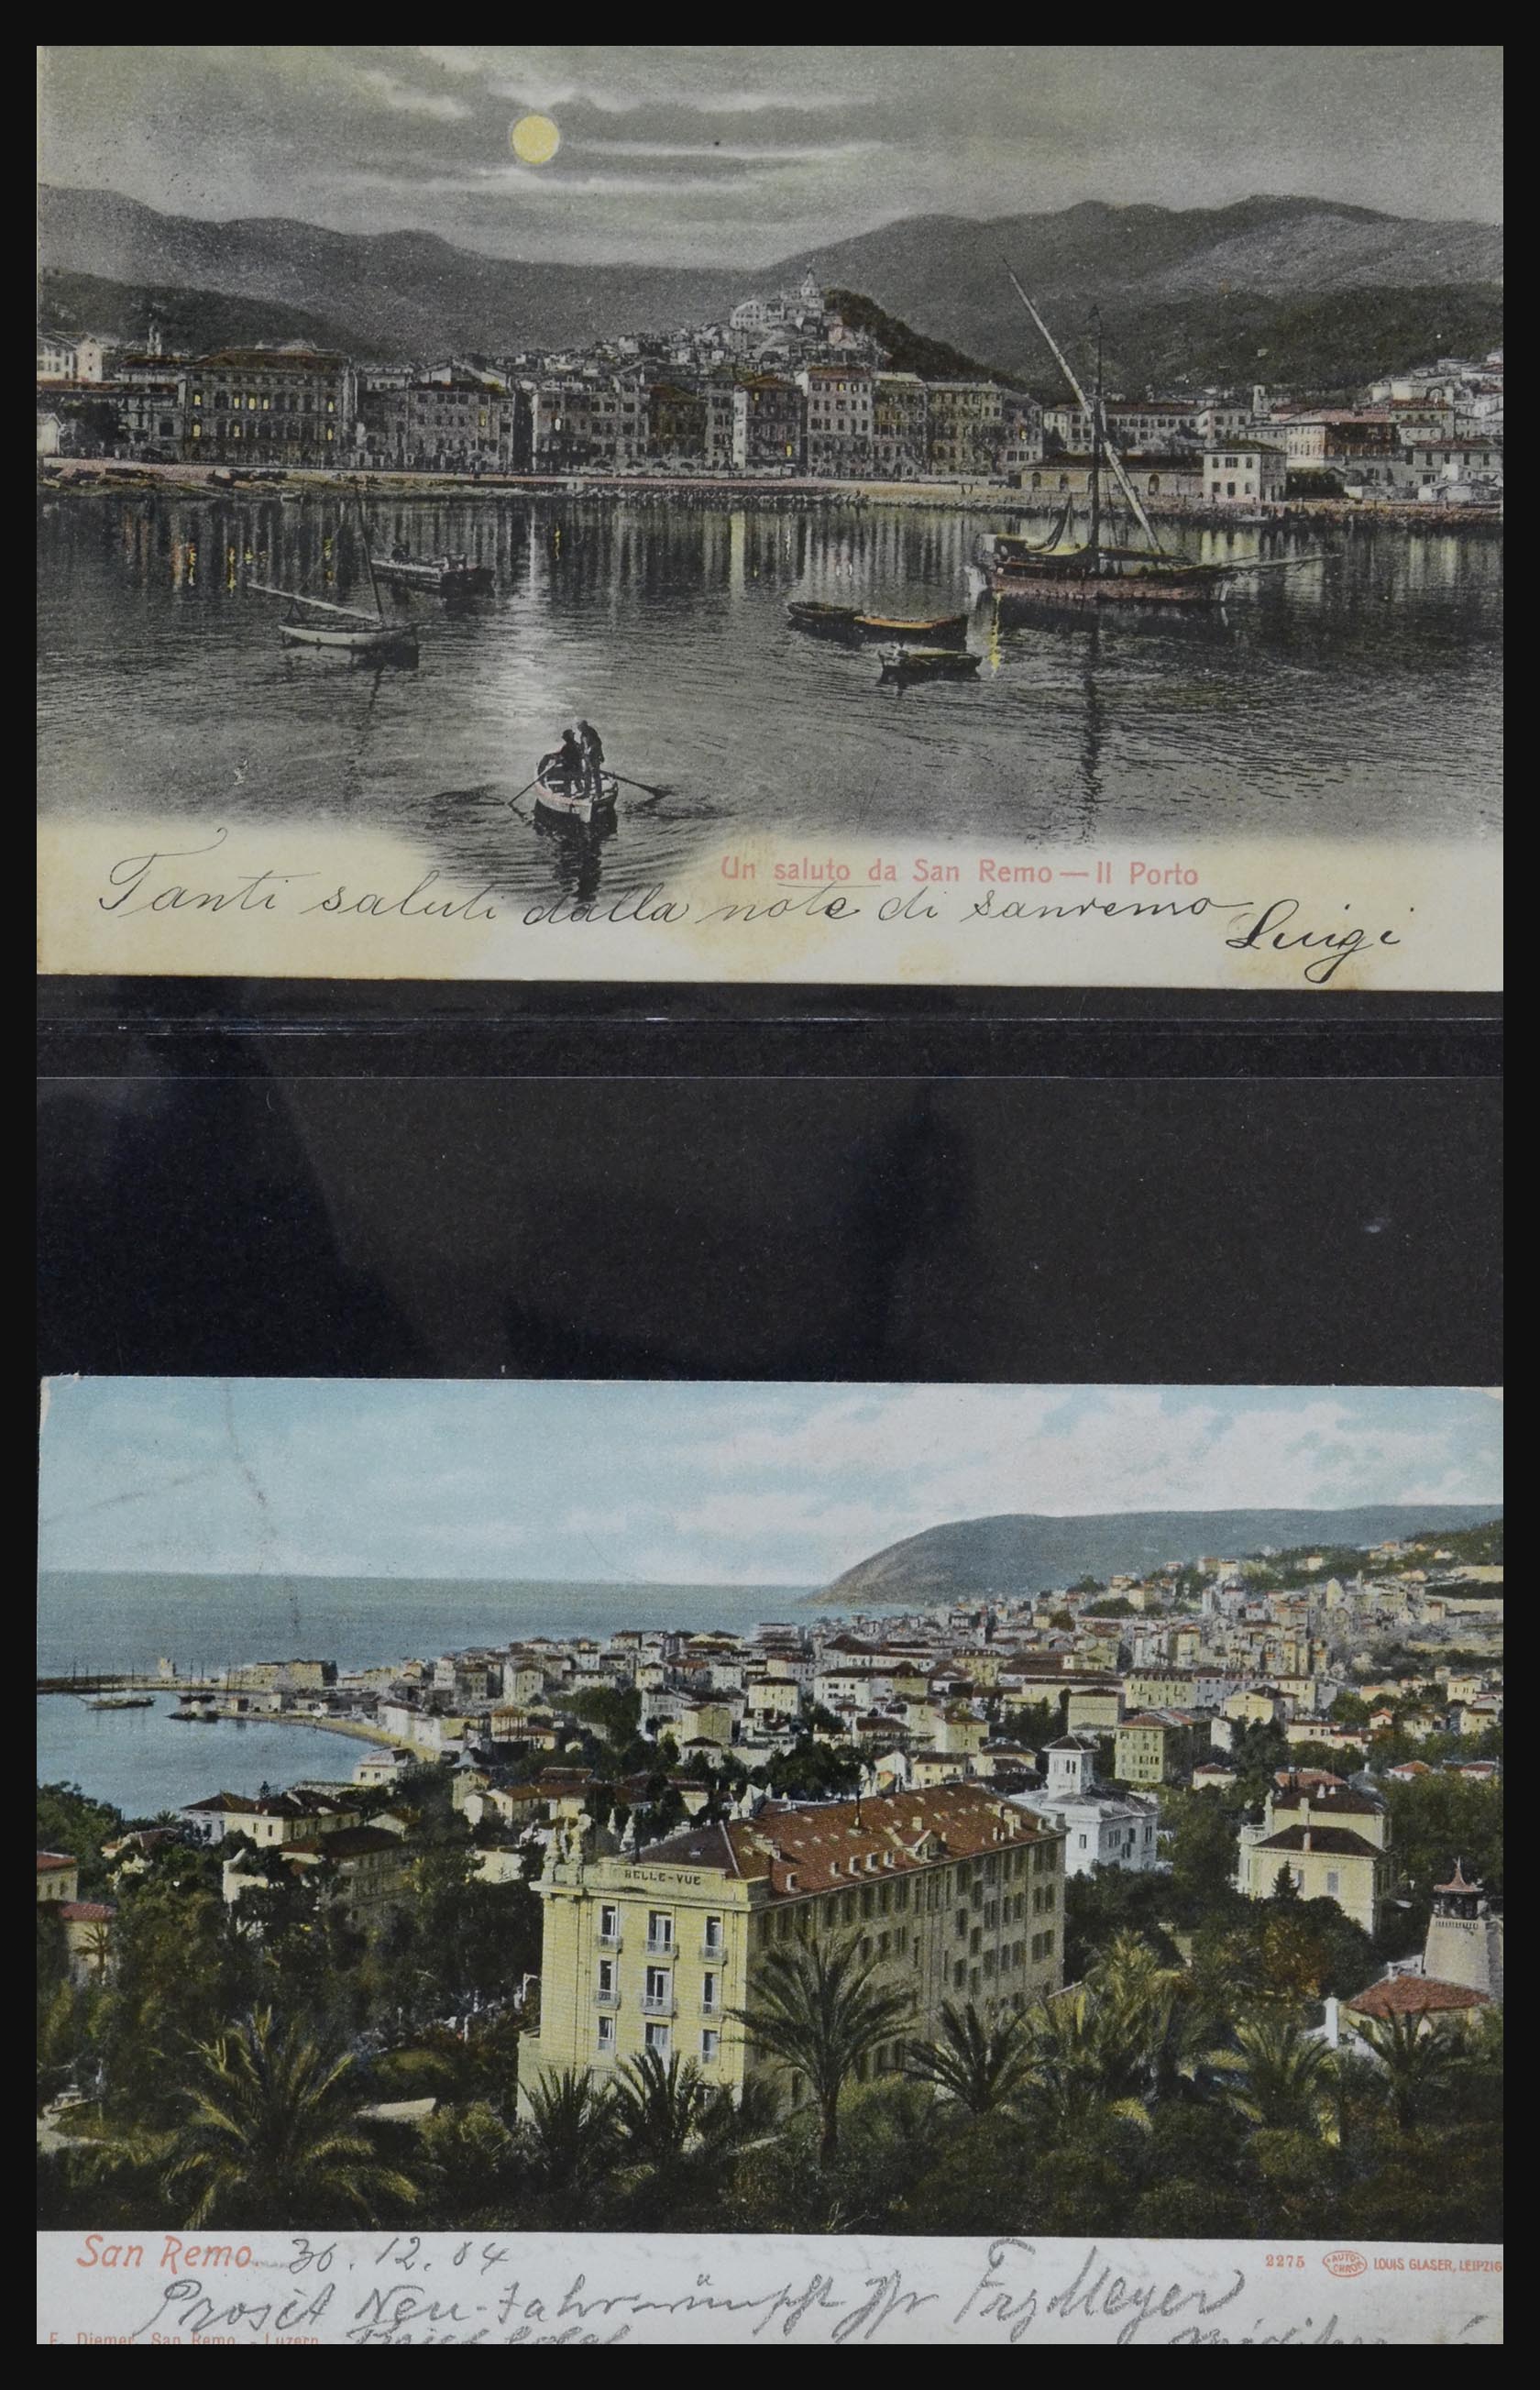 32255 0011 - 32255 Italië kaarten 1900-1945.